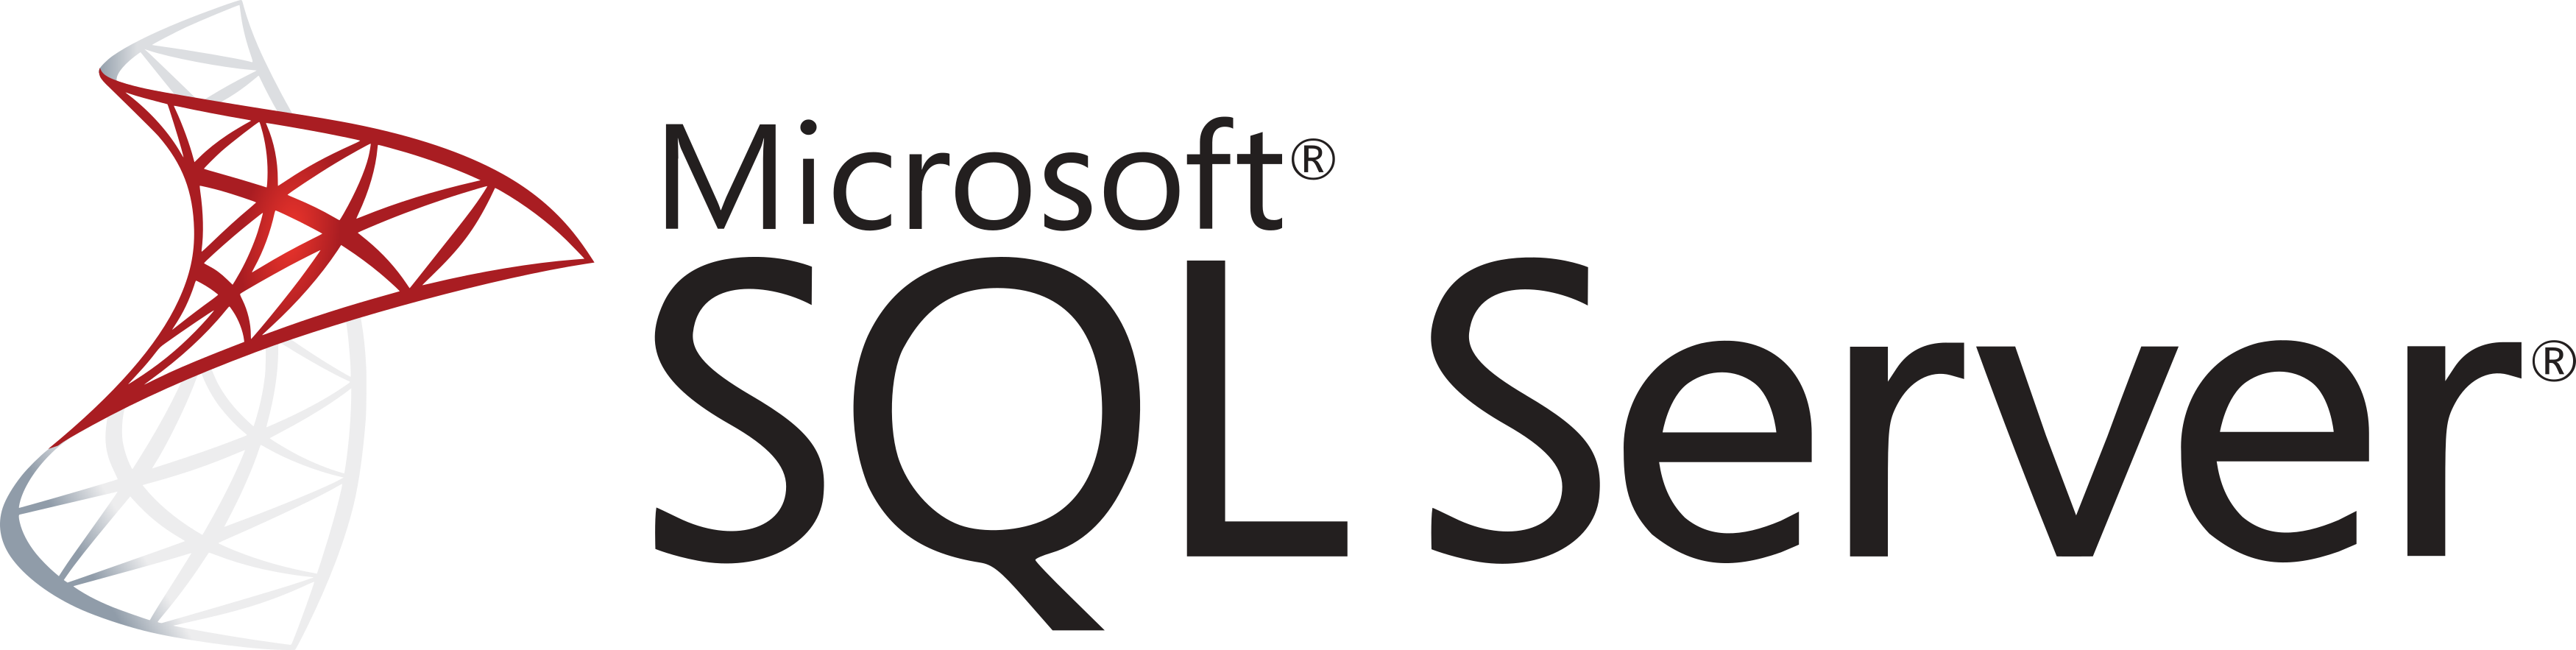 microsoft-sql-server-logo-01